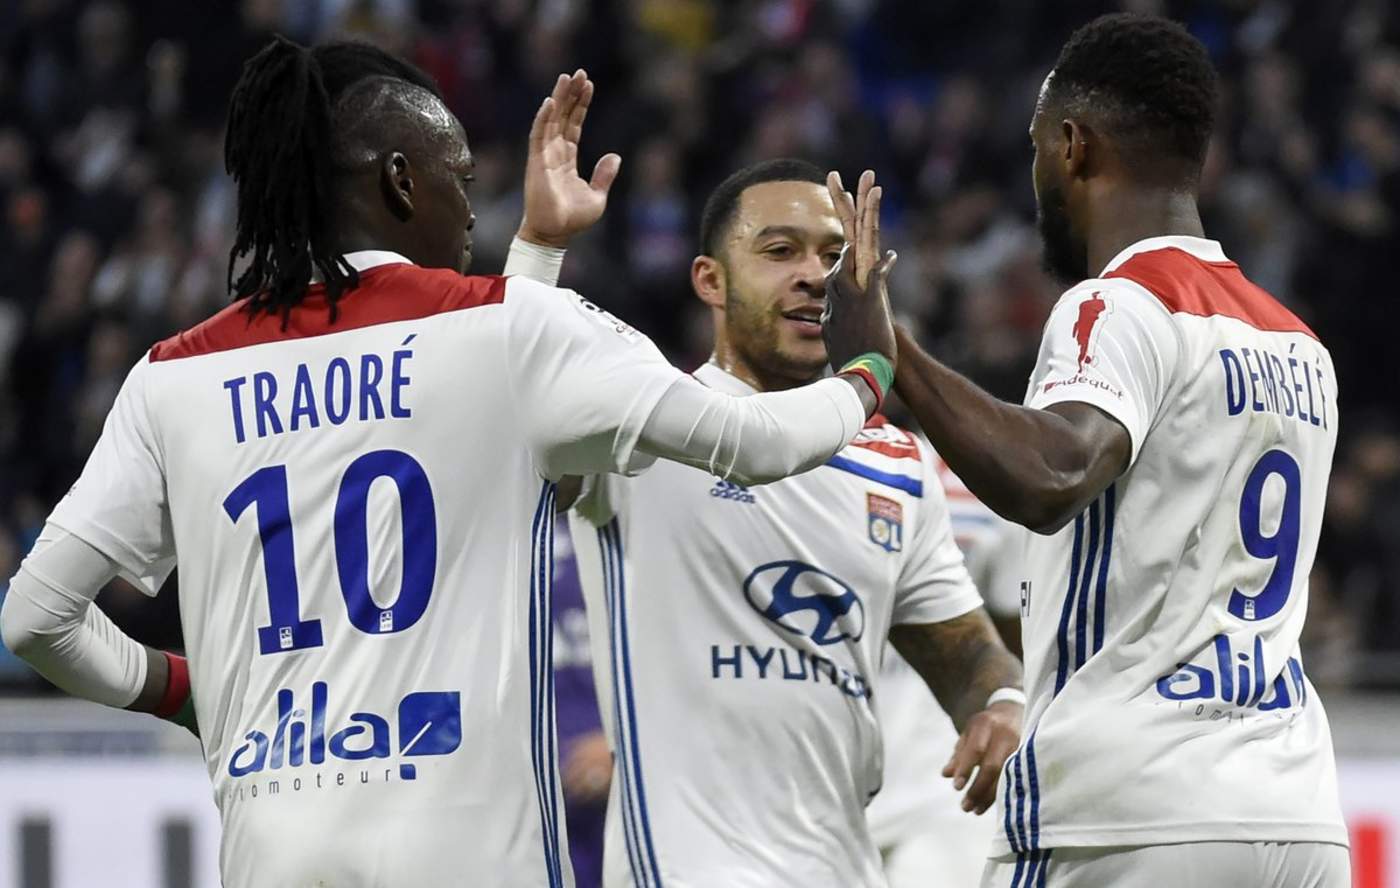 Tras el intermedio Moussa Dembélé acaparó el protagonismo pues el atacante galo redondeó la victoria de su equipo con dos tantos en tres minutos. (Especial)